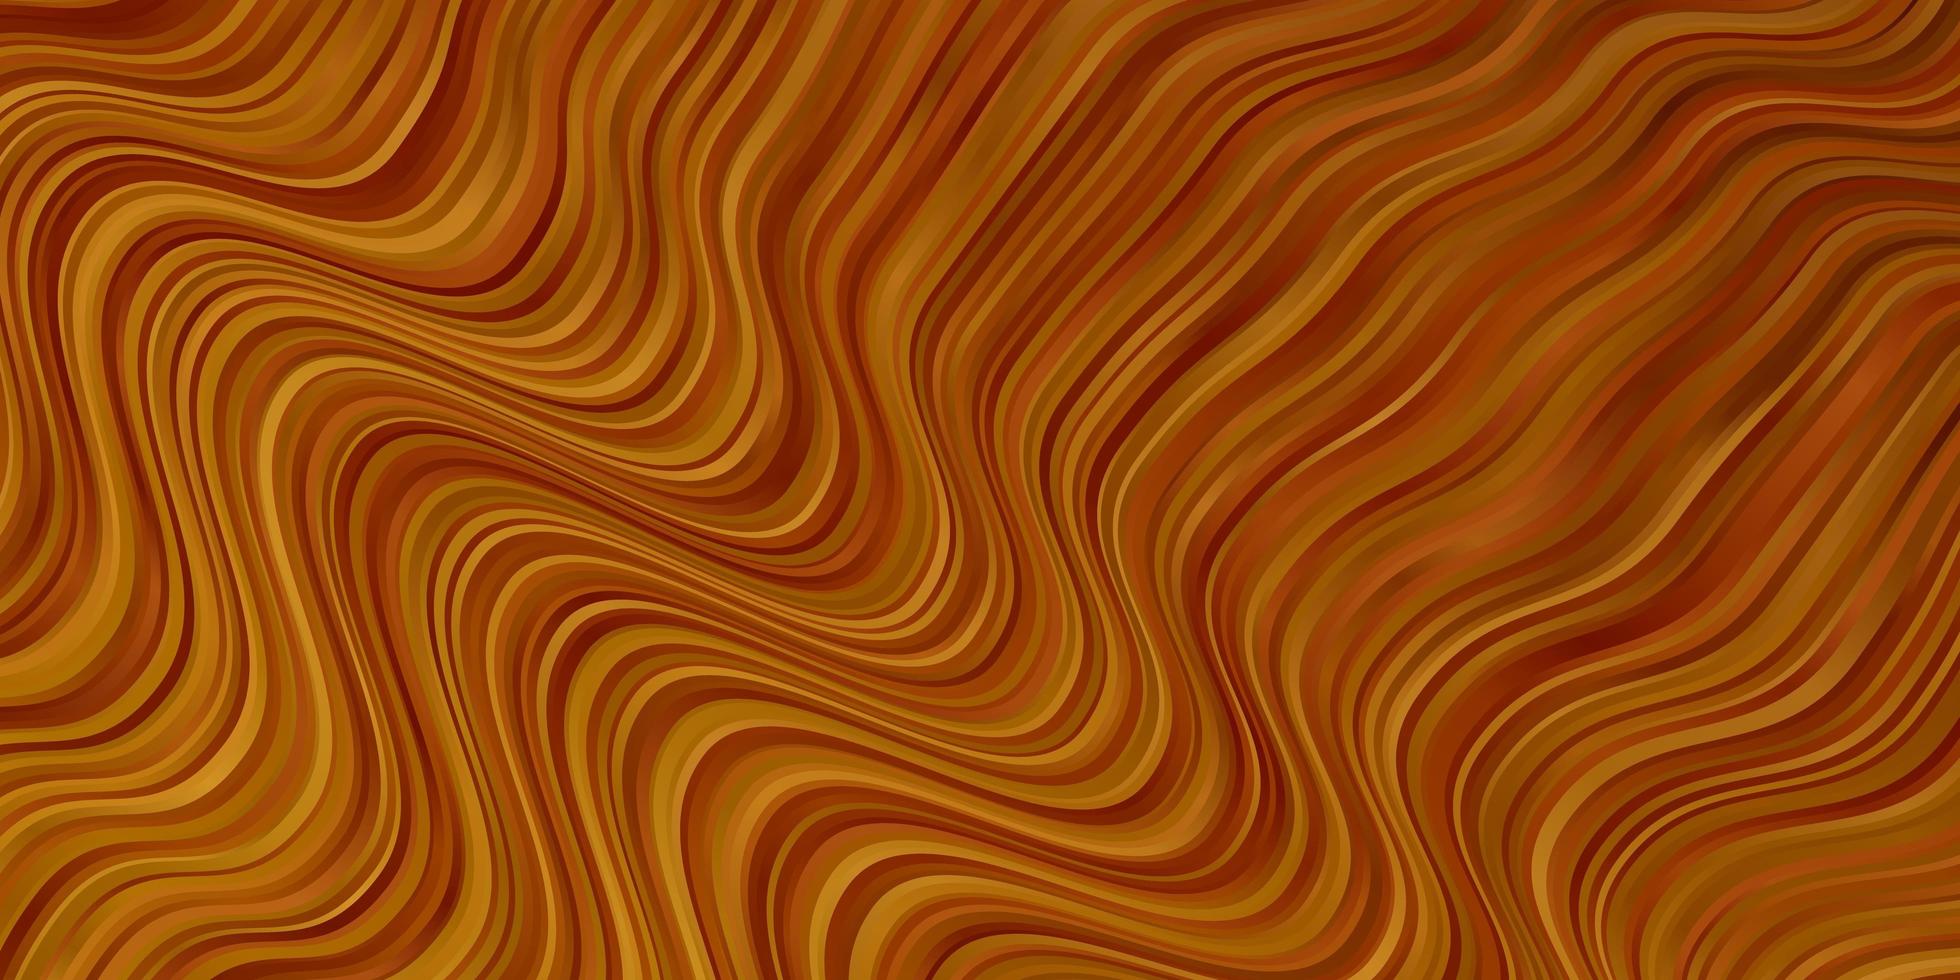 ljus orange vektor bakgrund med sneda linjer.